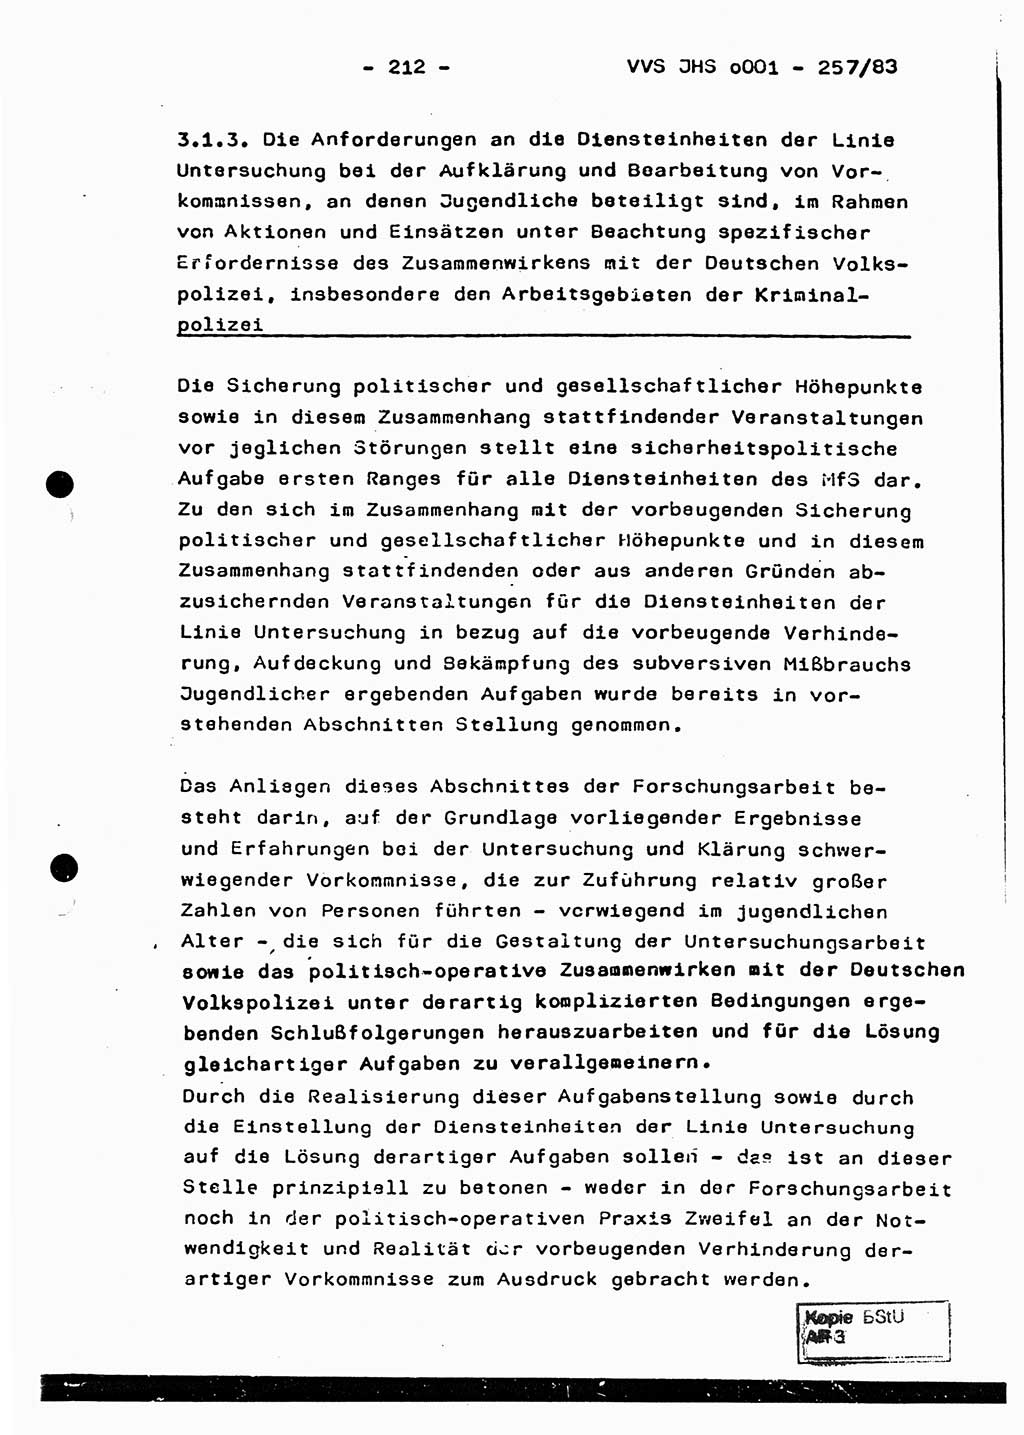 Dissertation, Oberst Helmut Lubas (BV Mdg.), Oberstleutnant Manfred Eschberger (HA IX), Oberleutnant Hans-Jürgen Ludwig (JHS), Ministerium für Staatssicherheit (MfS) [Deutsche Demokratische Republik (DDR)], Juristische Hochschule (JHS), Vertrauliche Verschlußsache (VVS) o001-257/83, Potsdam 1983, Seite 212 (Diss. MfS DDR JHS VVS o001-257/83 1983, S. 212)